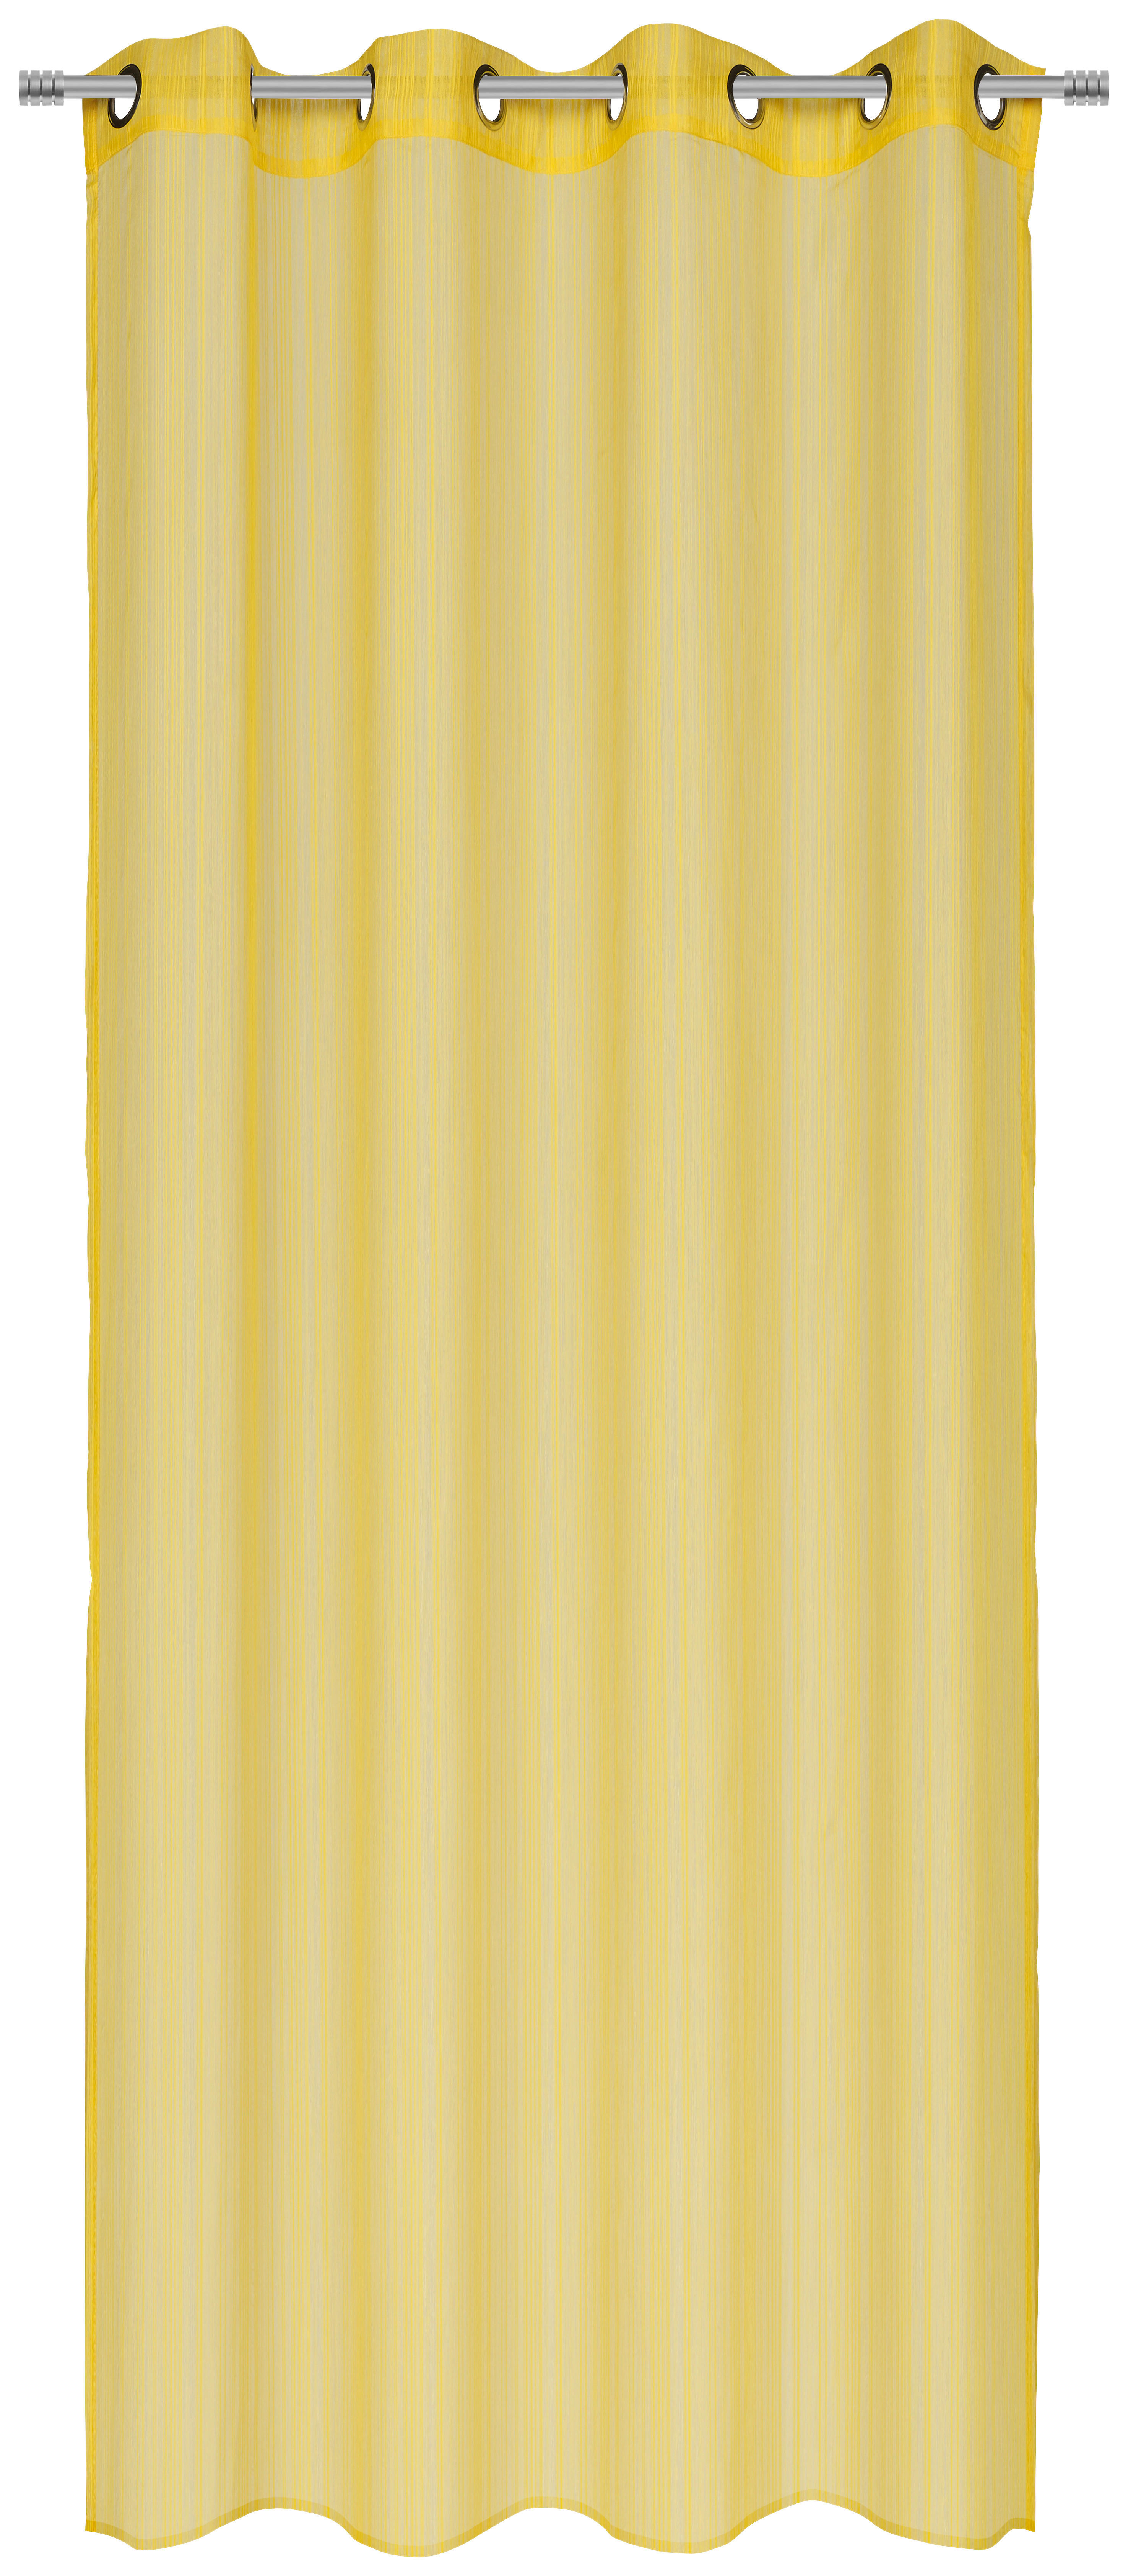 ZAVESA SA KARIKAMA žuta - žuta, Konvencionalno, tekstil (140/245cm) - Esposa